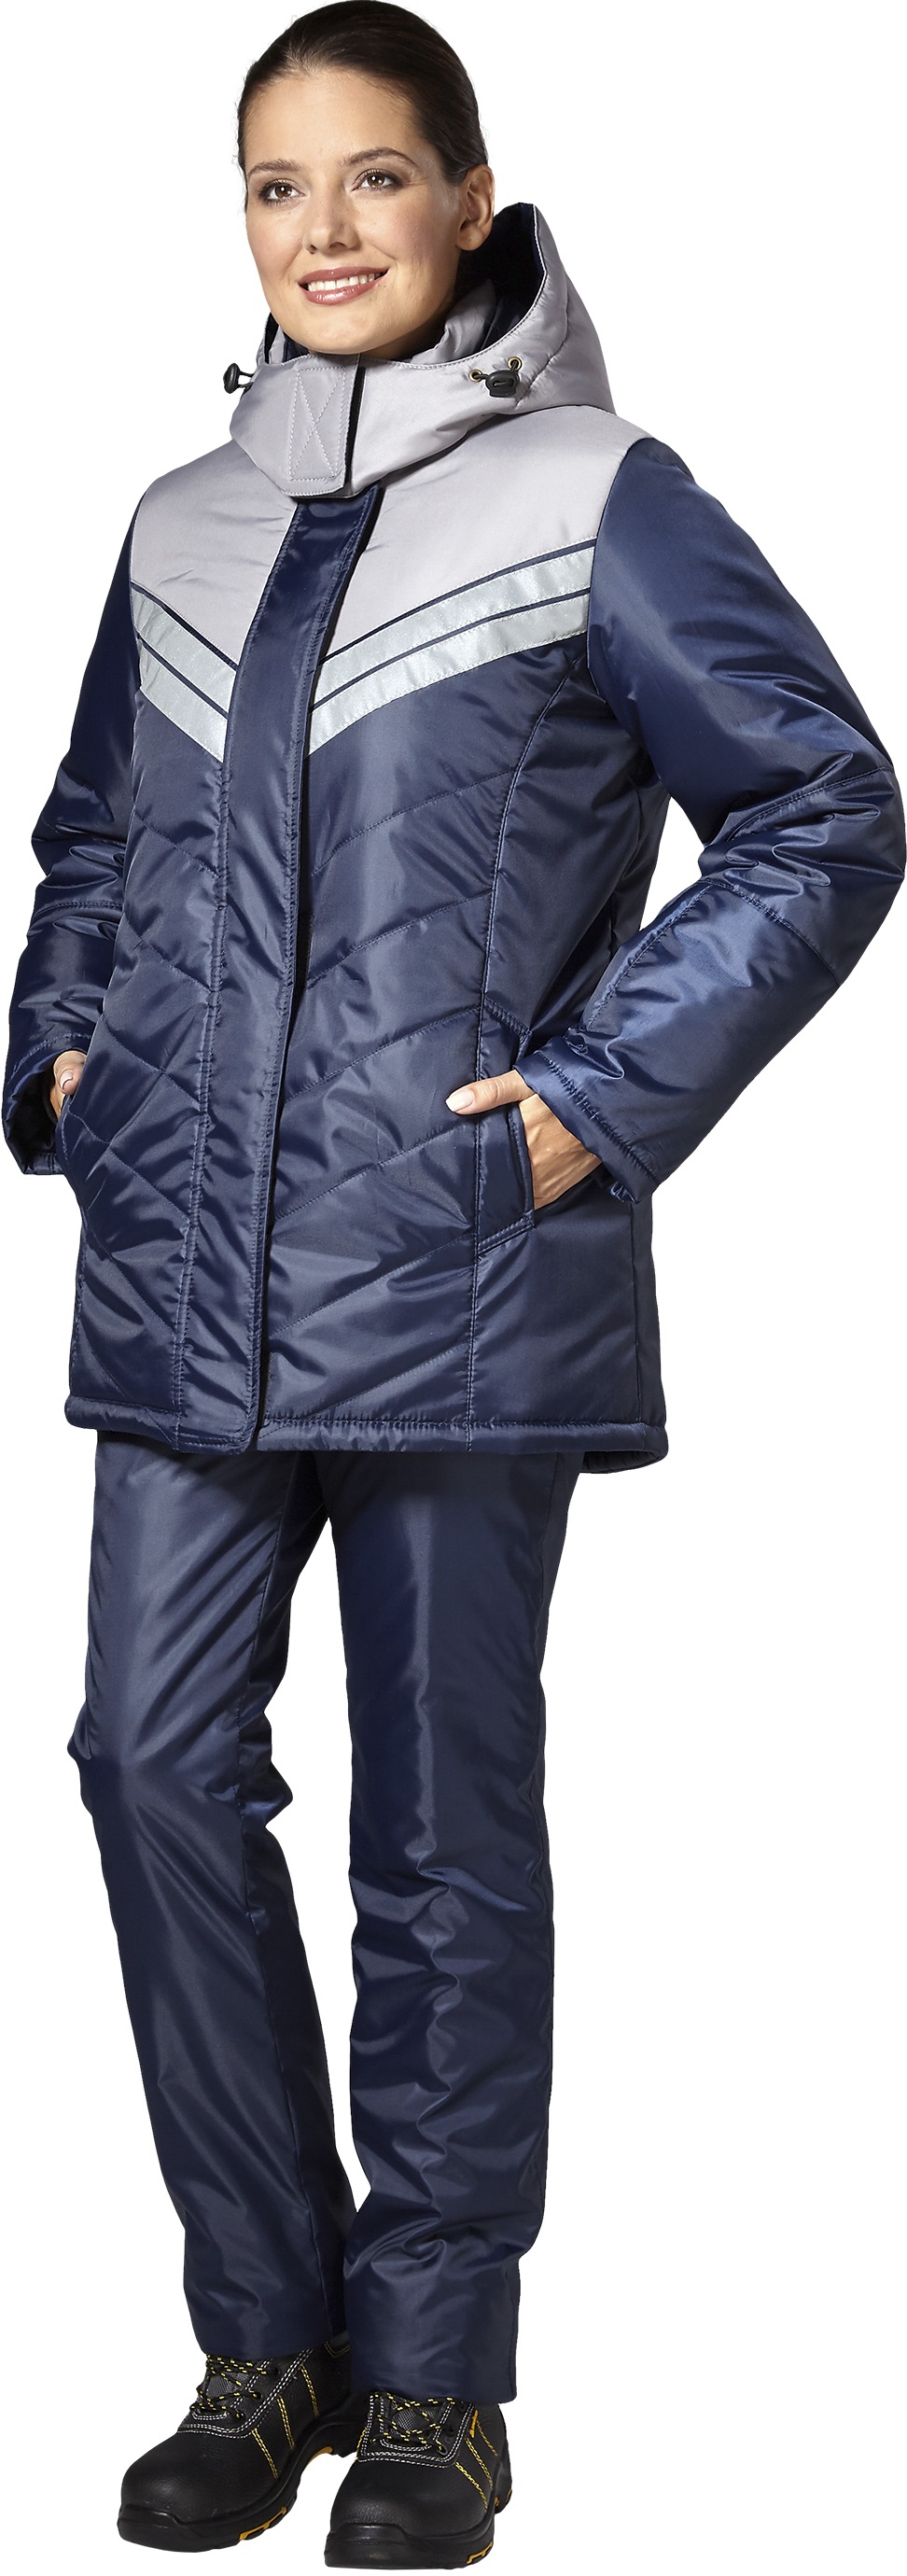 Куртка ЭРЕБУС утеплённая, т.синий-серый, женская